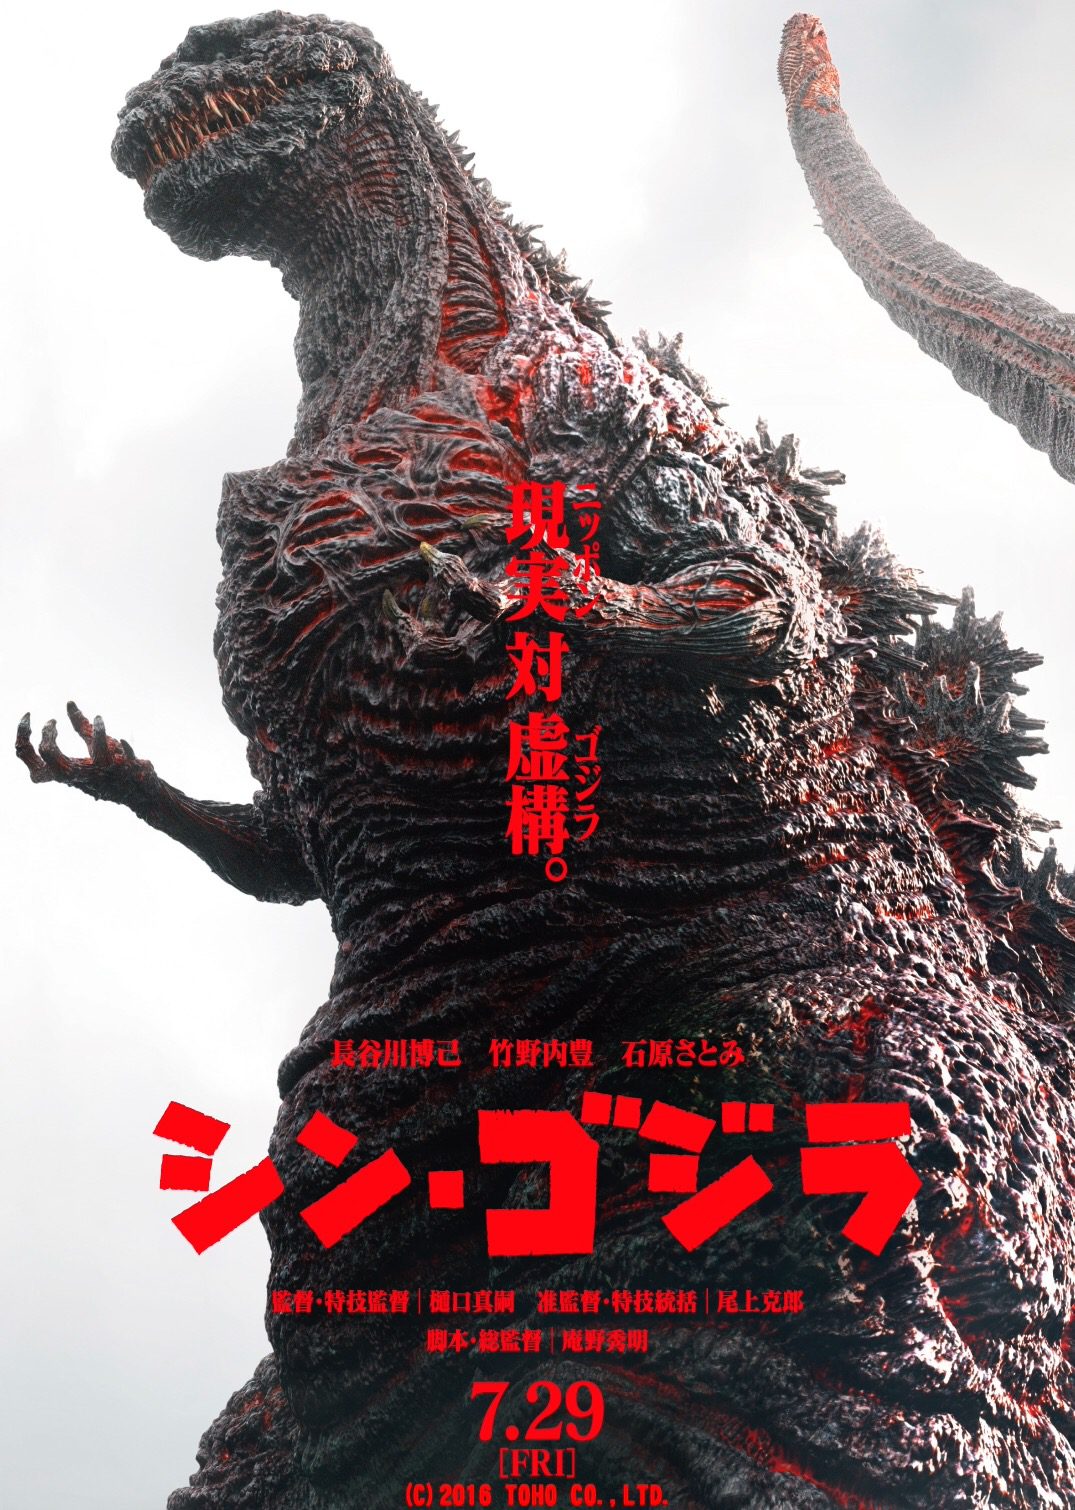 ดูหนังออนไลน์ฟรี Godzilla Resurgence ก็อดซิลล่า รีเซอร์เจนซ์